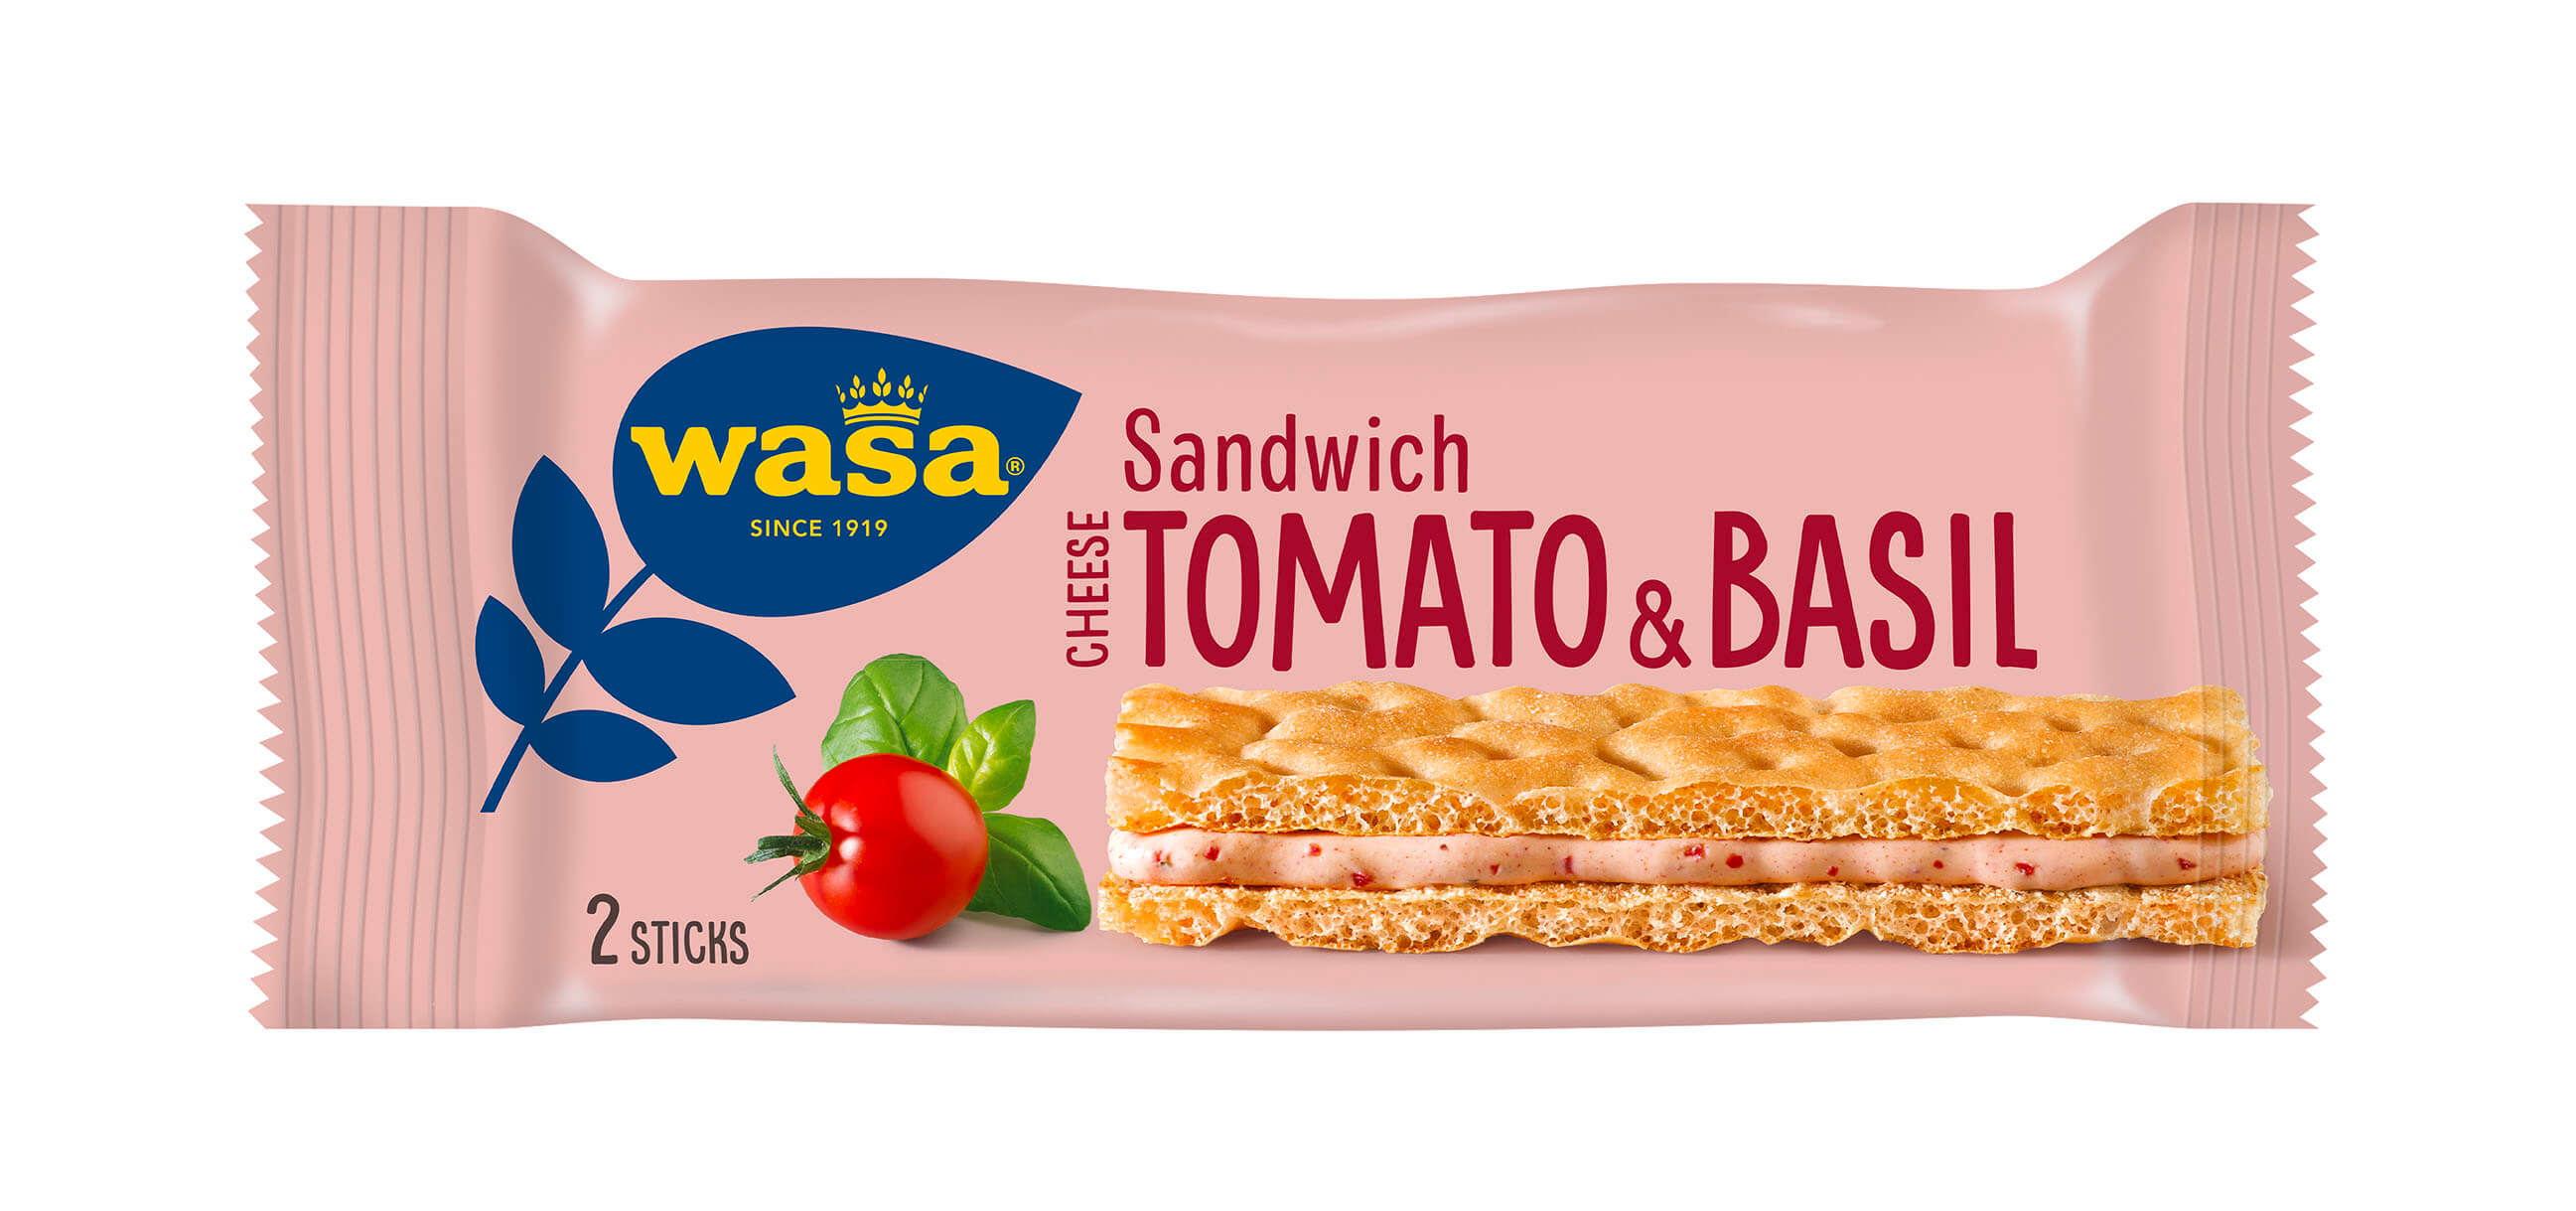 Wasa Sandwich Cheese, Tomato & Basil - Upptäck det perfekta mellanmålet, krispigt och gott knäckebröd med krämig fyllning. Perfekt som mellanmål på språng  och som tips på mellis barn, efter skolan eller innan träning.